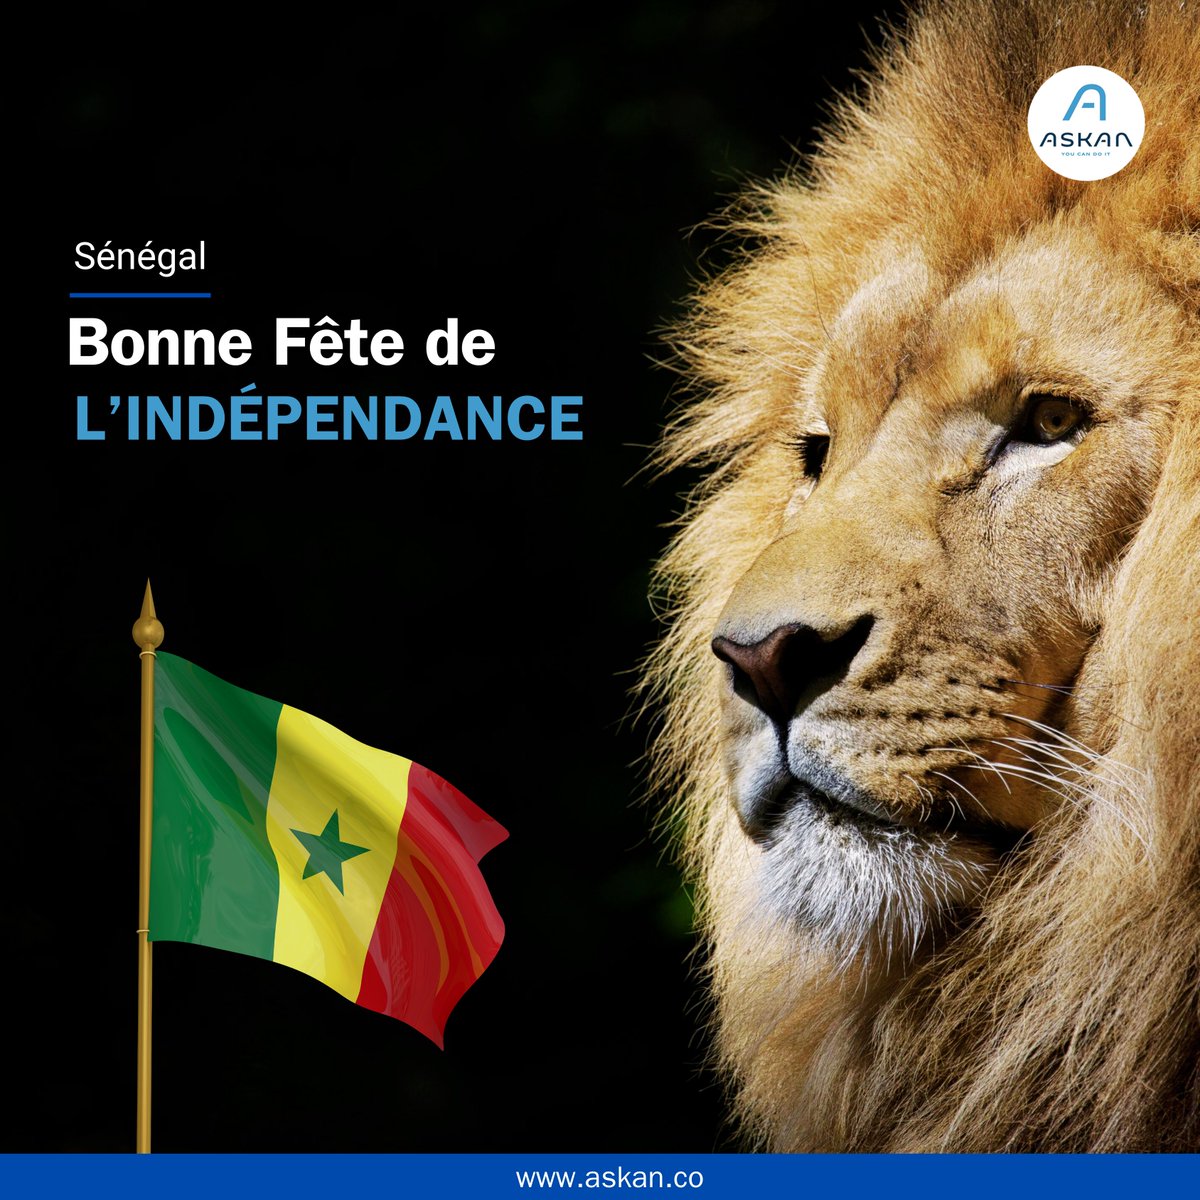 Le 04 Avril, c'est le jour de l'indépendance du Sénégal ! 🇸🇳💪🏾 . Askan souhaite une très bonne fête à sa communauté sénégalaise. Diadieuf ! 👊🏾 . #Askan #Entrepreneuriat #Senegal #4Avril #Independance